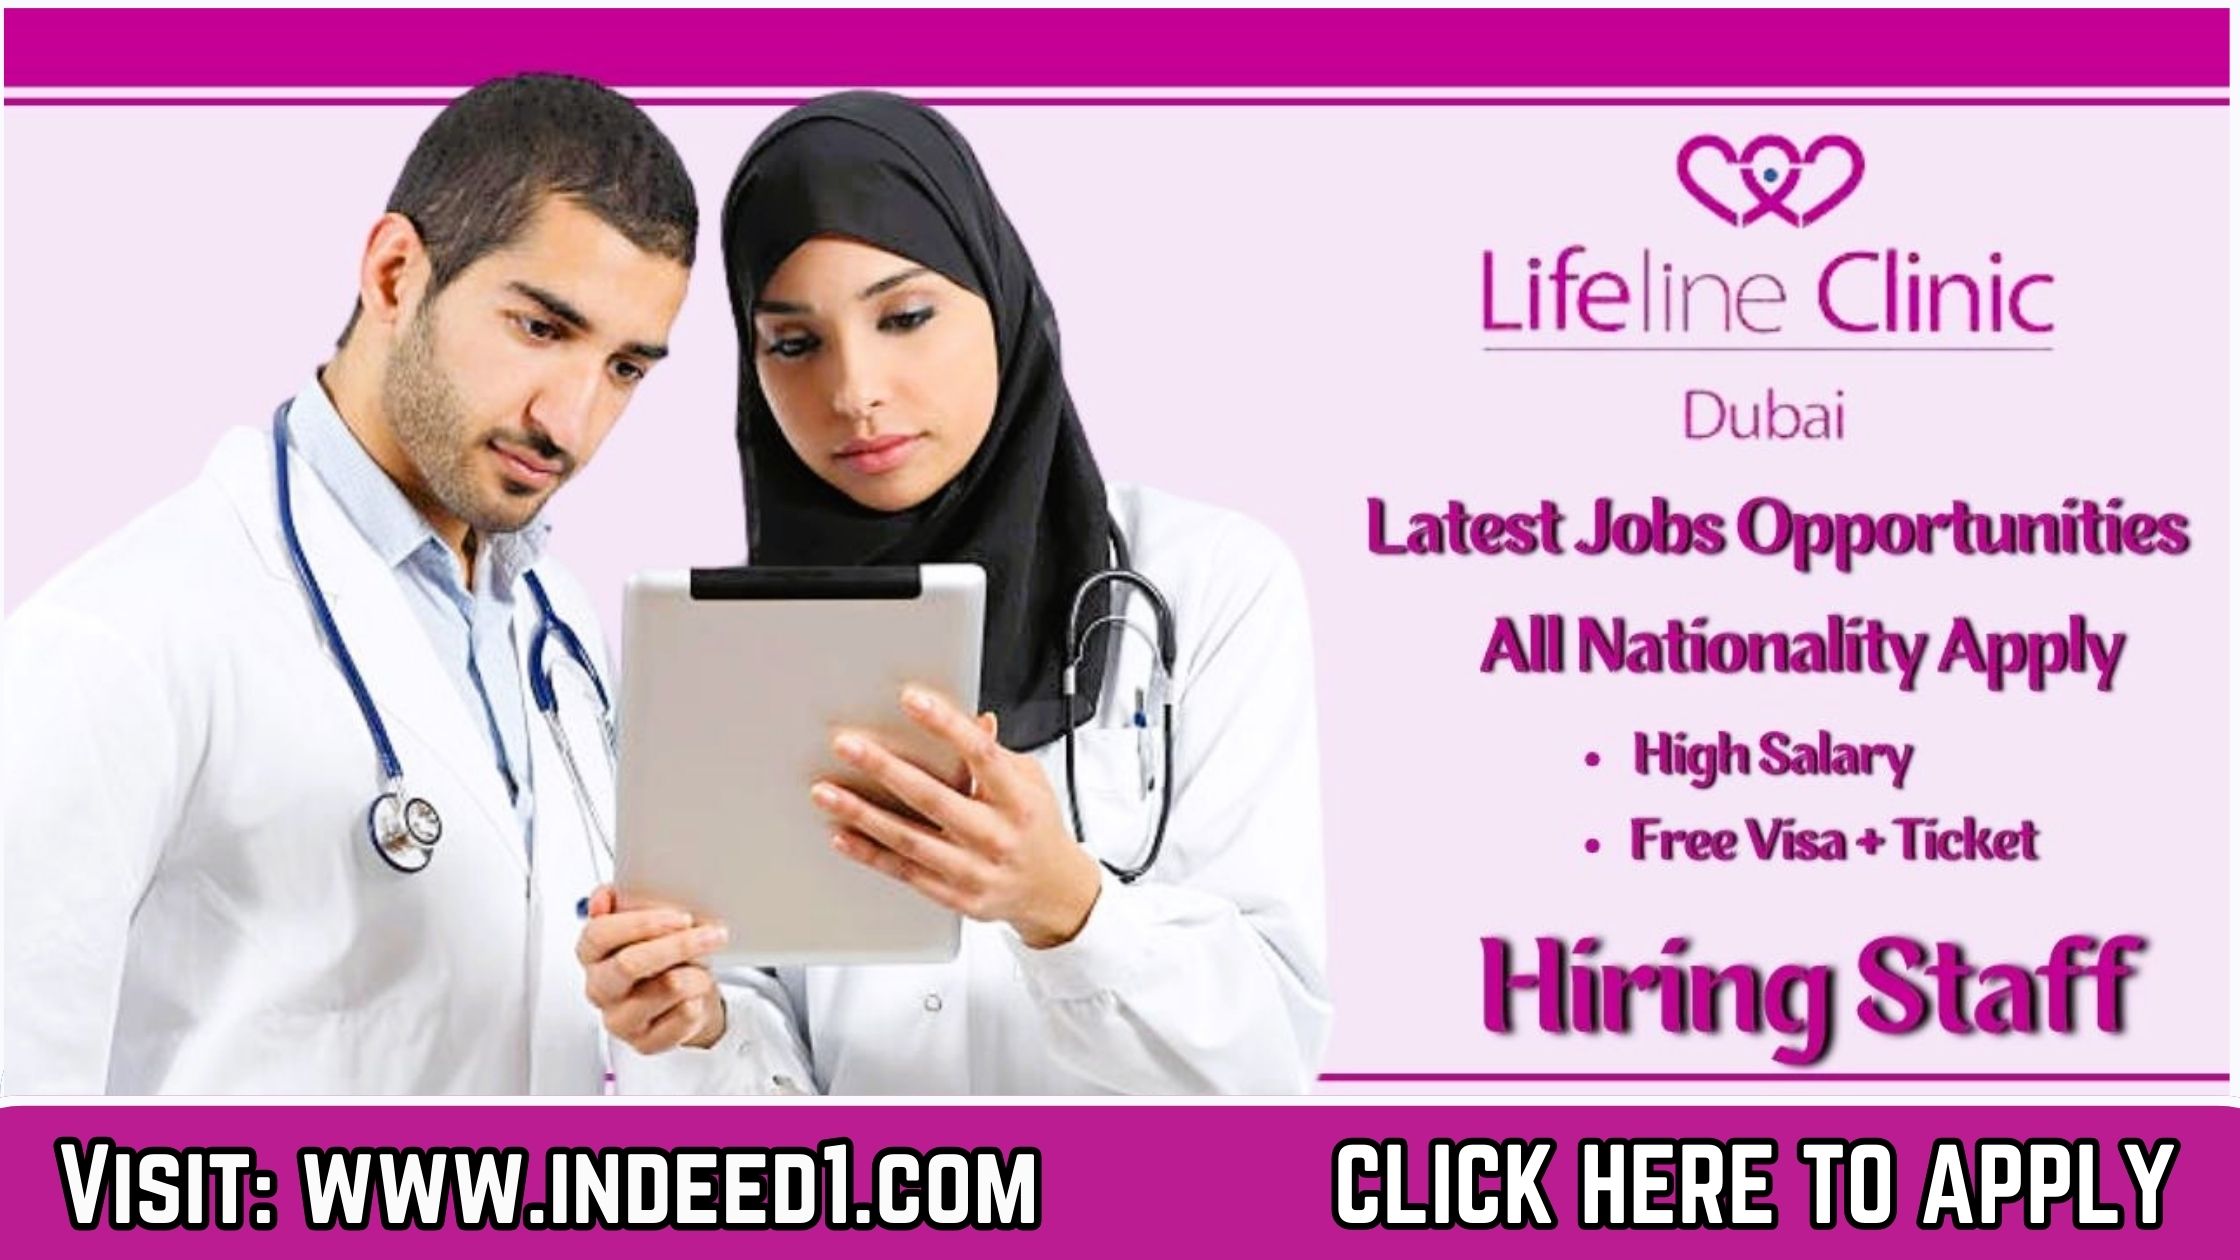 LIFELINE Clinic JOBS in DUBAI